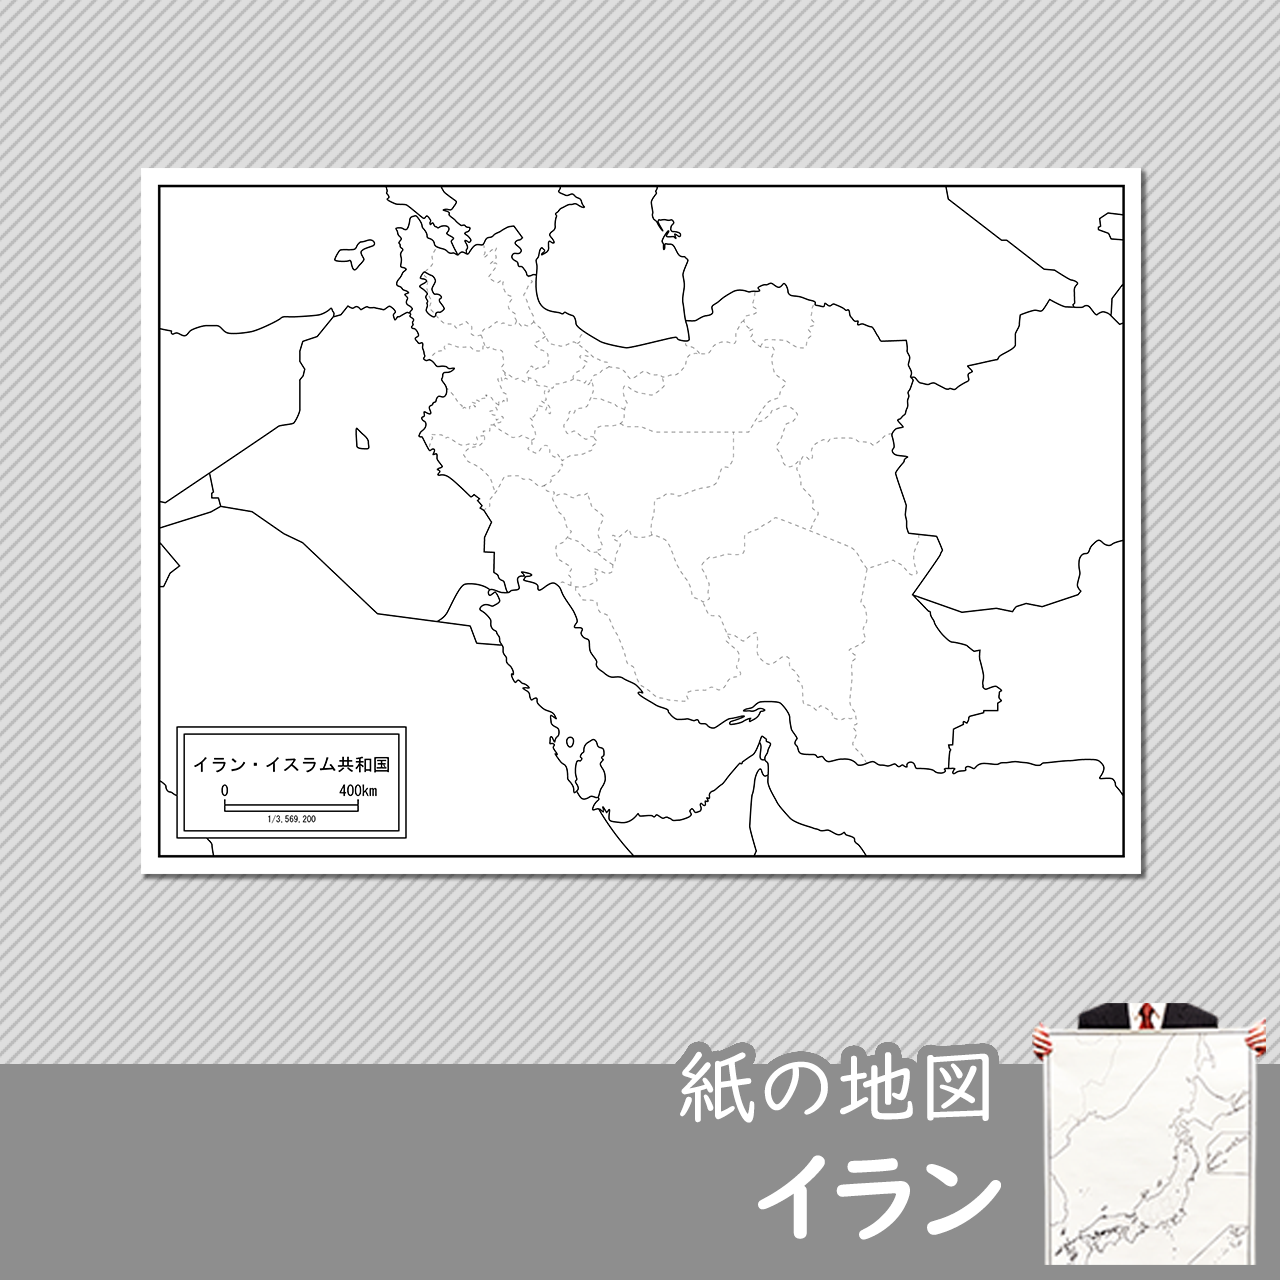 イランの紙の白地図のサムネイル